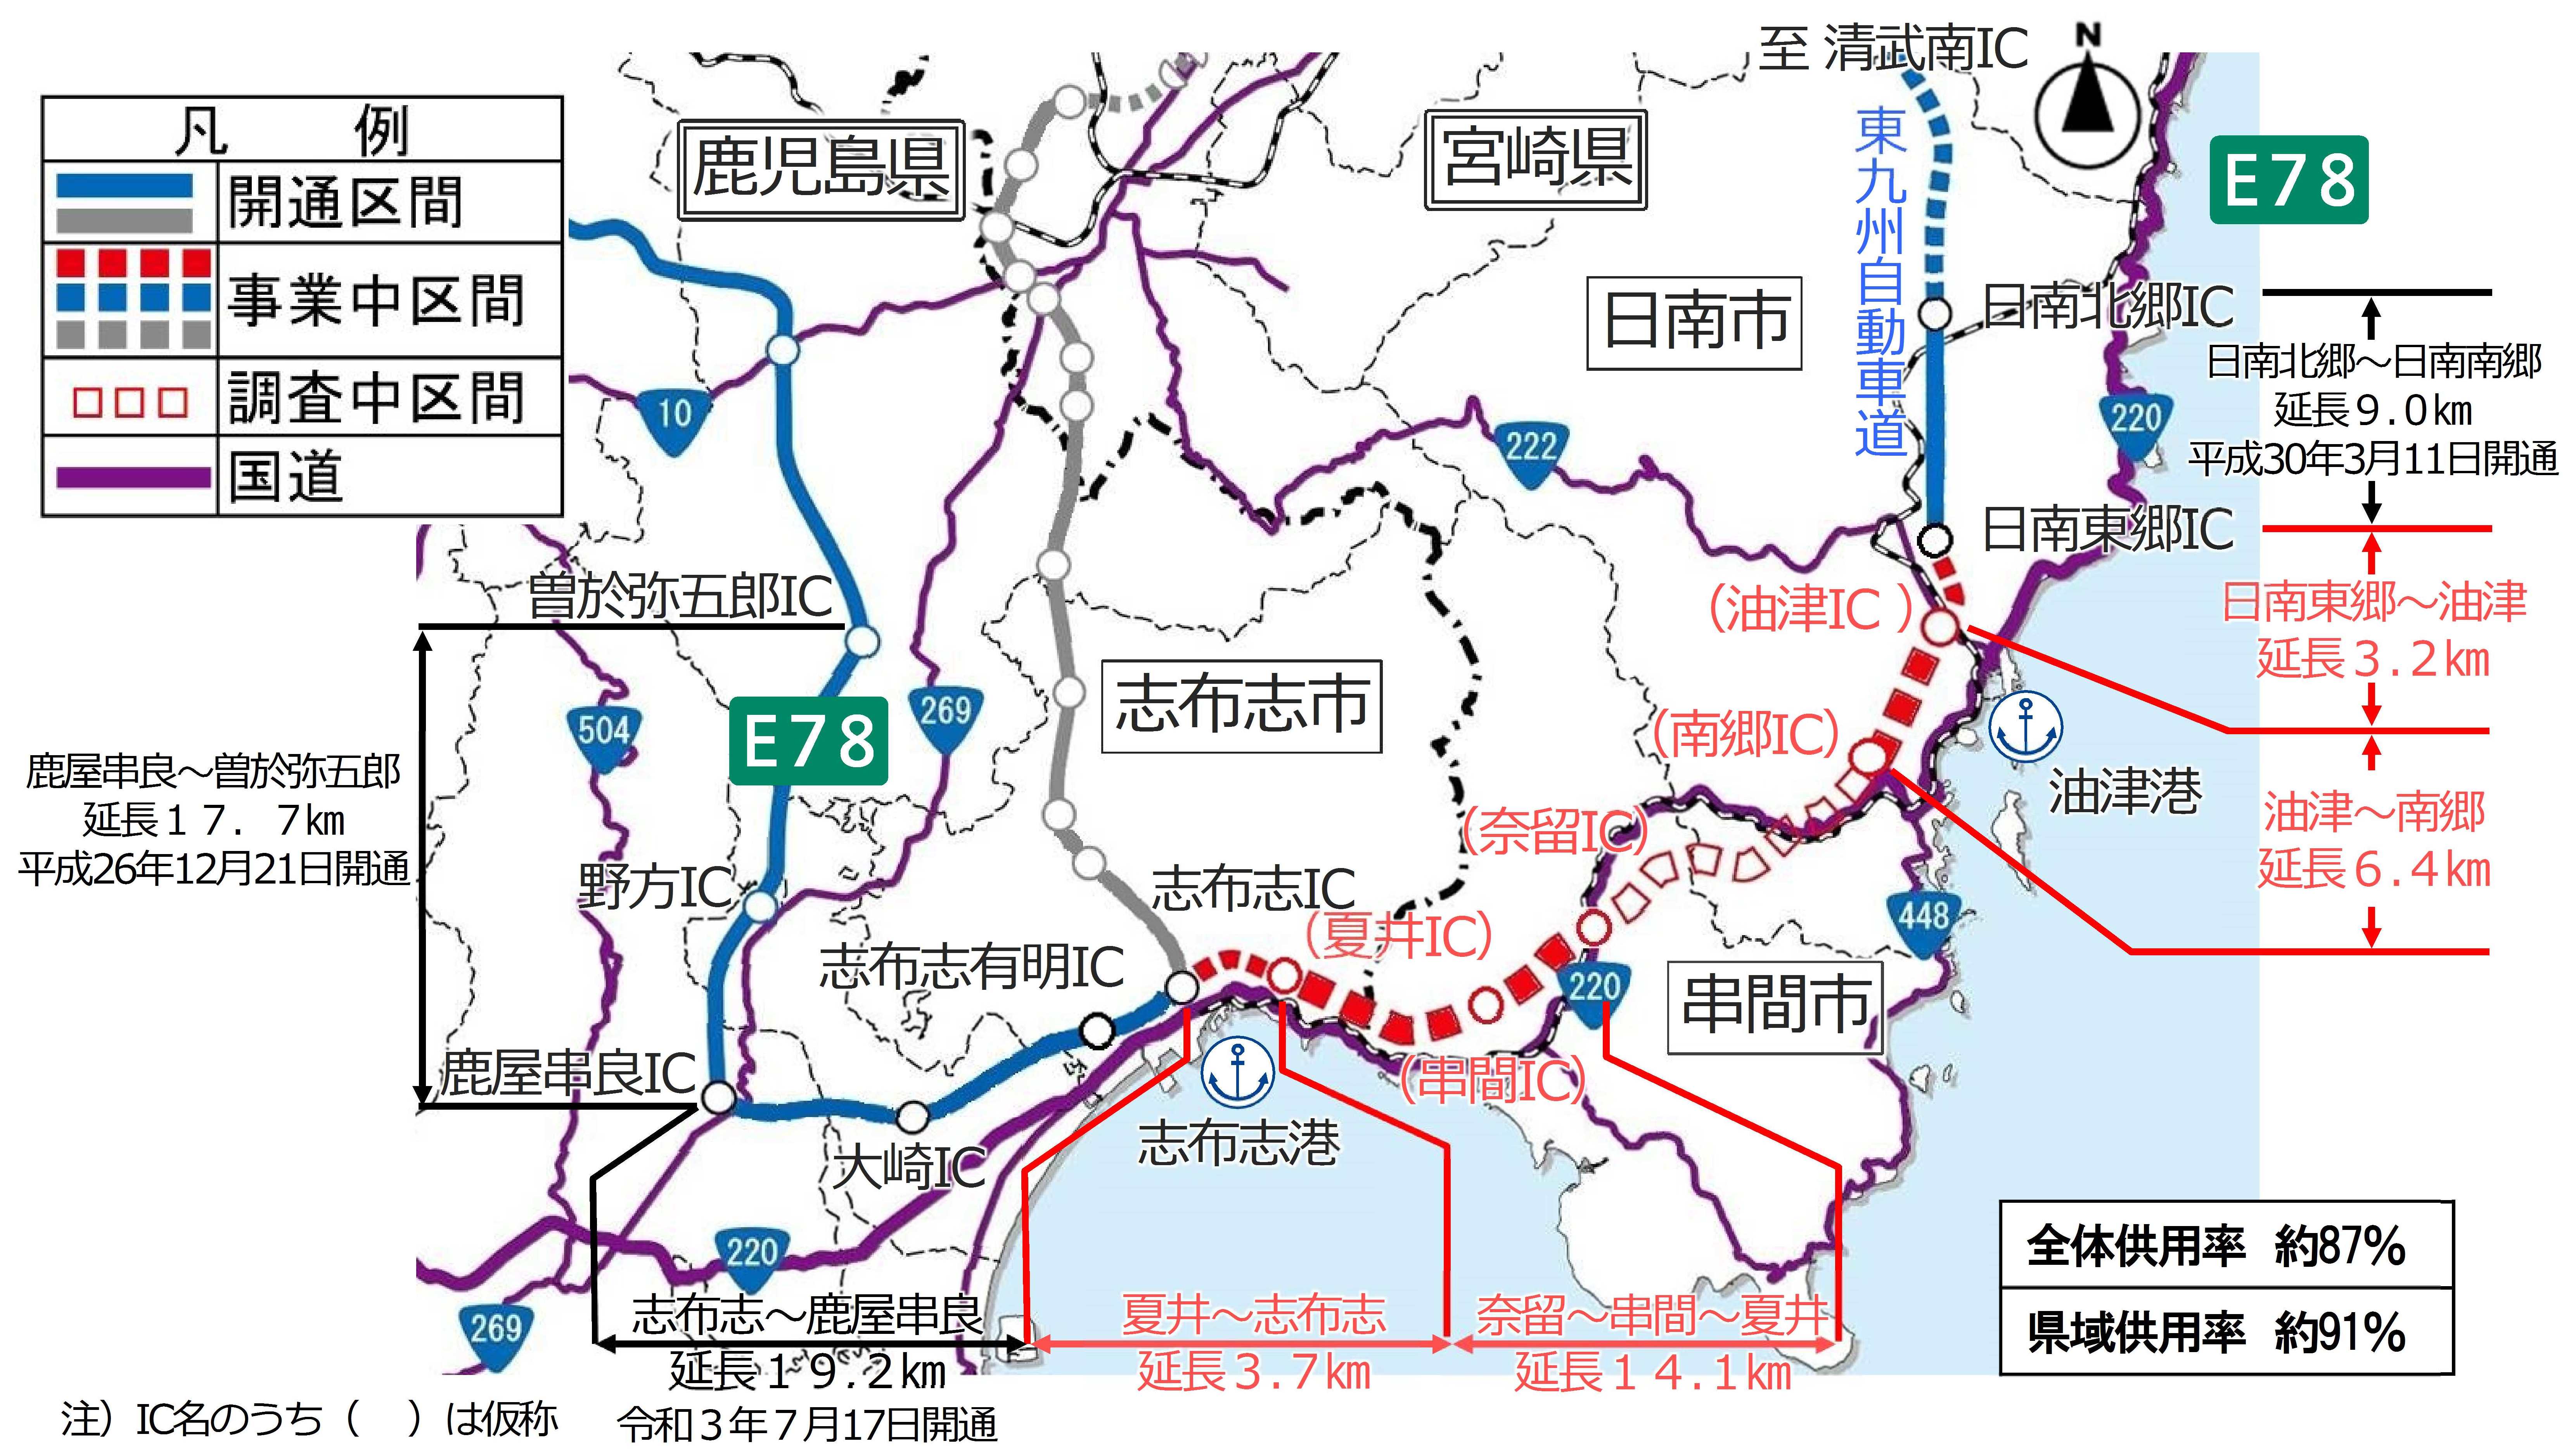 東九州自動車道の整備状況を紹介する画像です